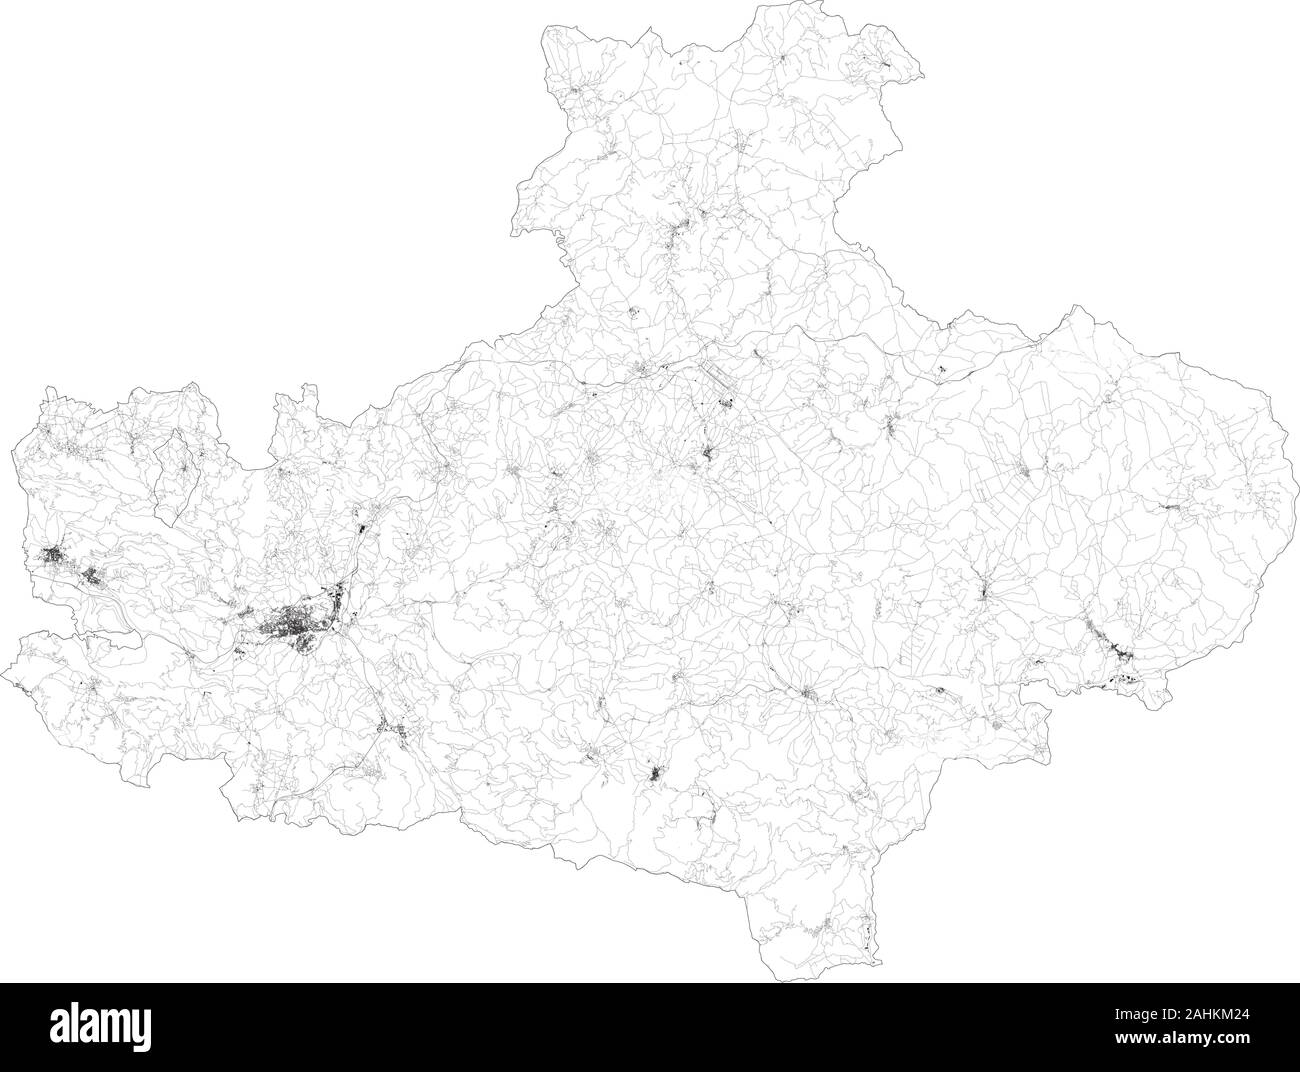 Sat-Karte der Provinz Avellino Städte und Straßen, Gebäude und Straßen der Umgebung. Region Kampanien, Italien. Karte Straßen Stock Vektor